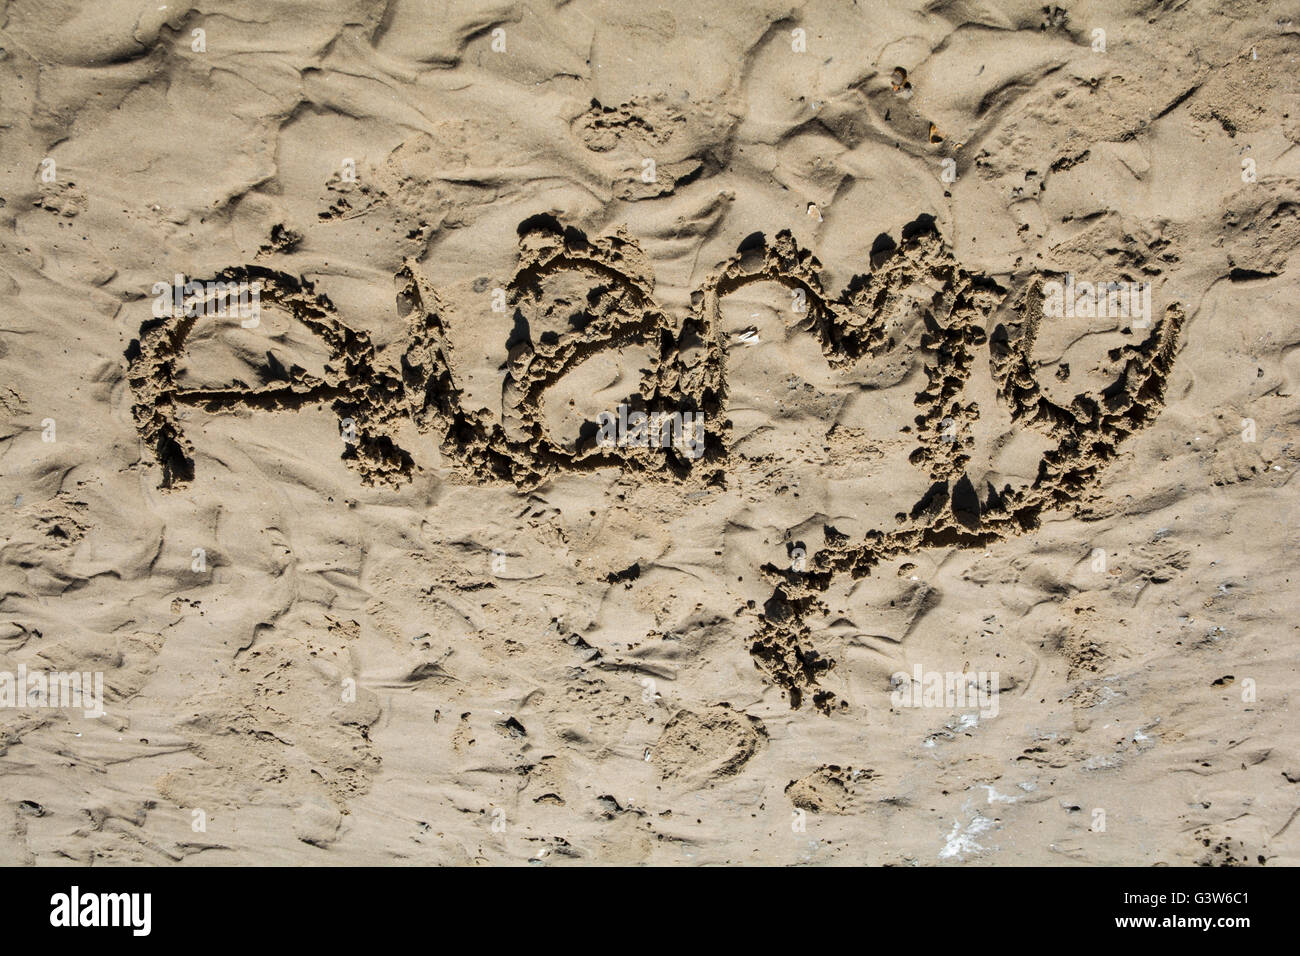 Das Wort "Alamy" in den Sand gezeichnet. Stockfoto